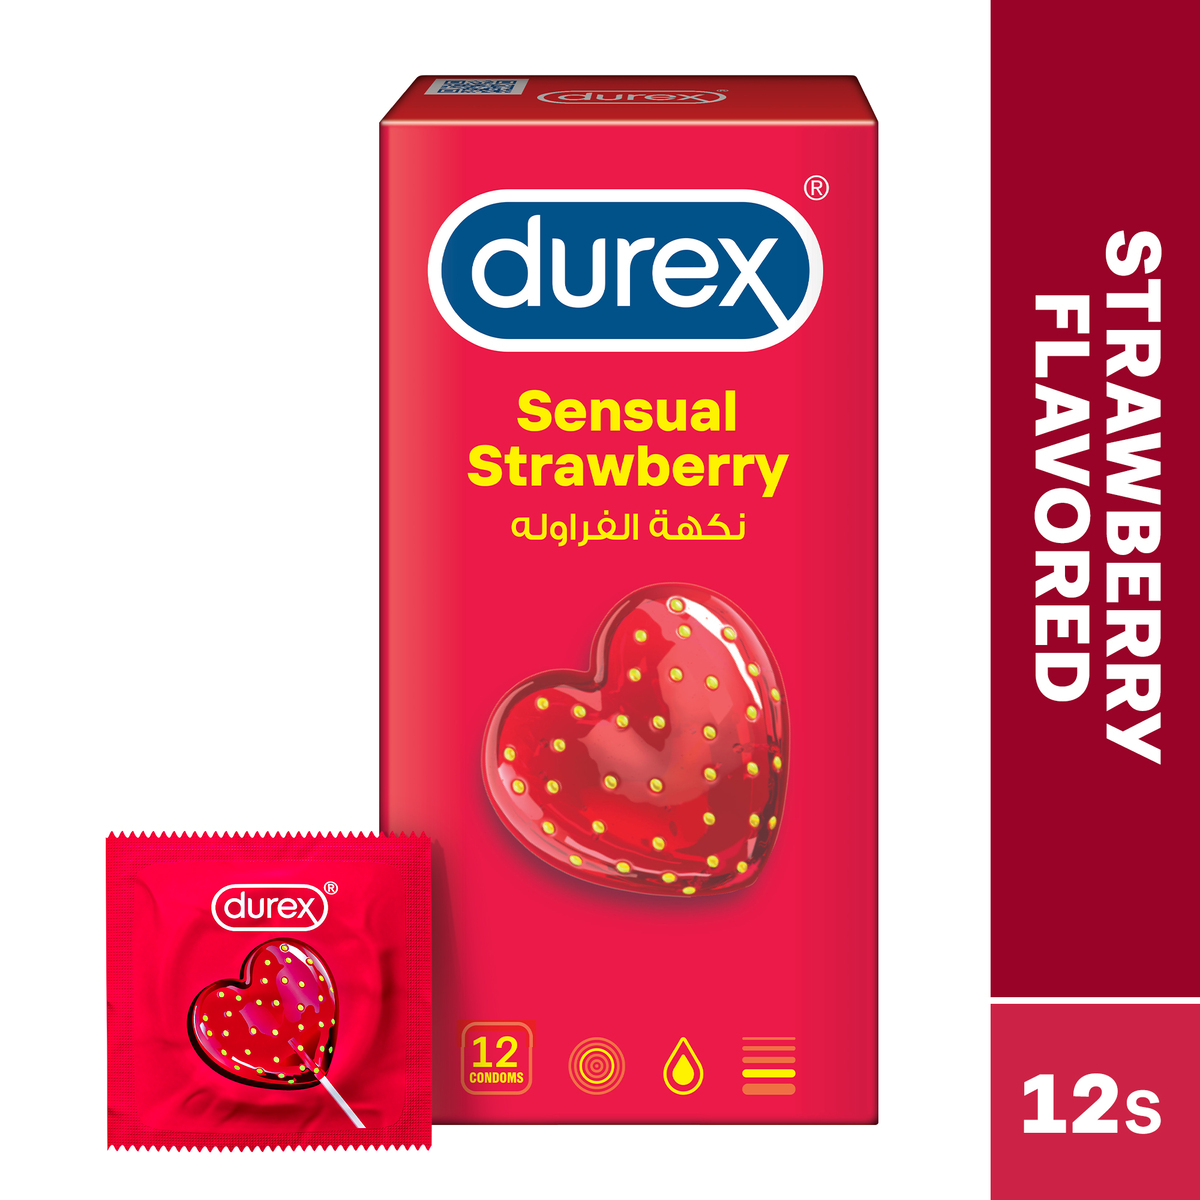 Durex Sensual Strawberry Condoms 12 pcs